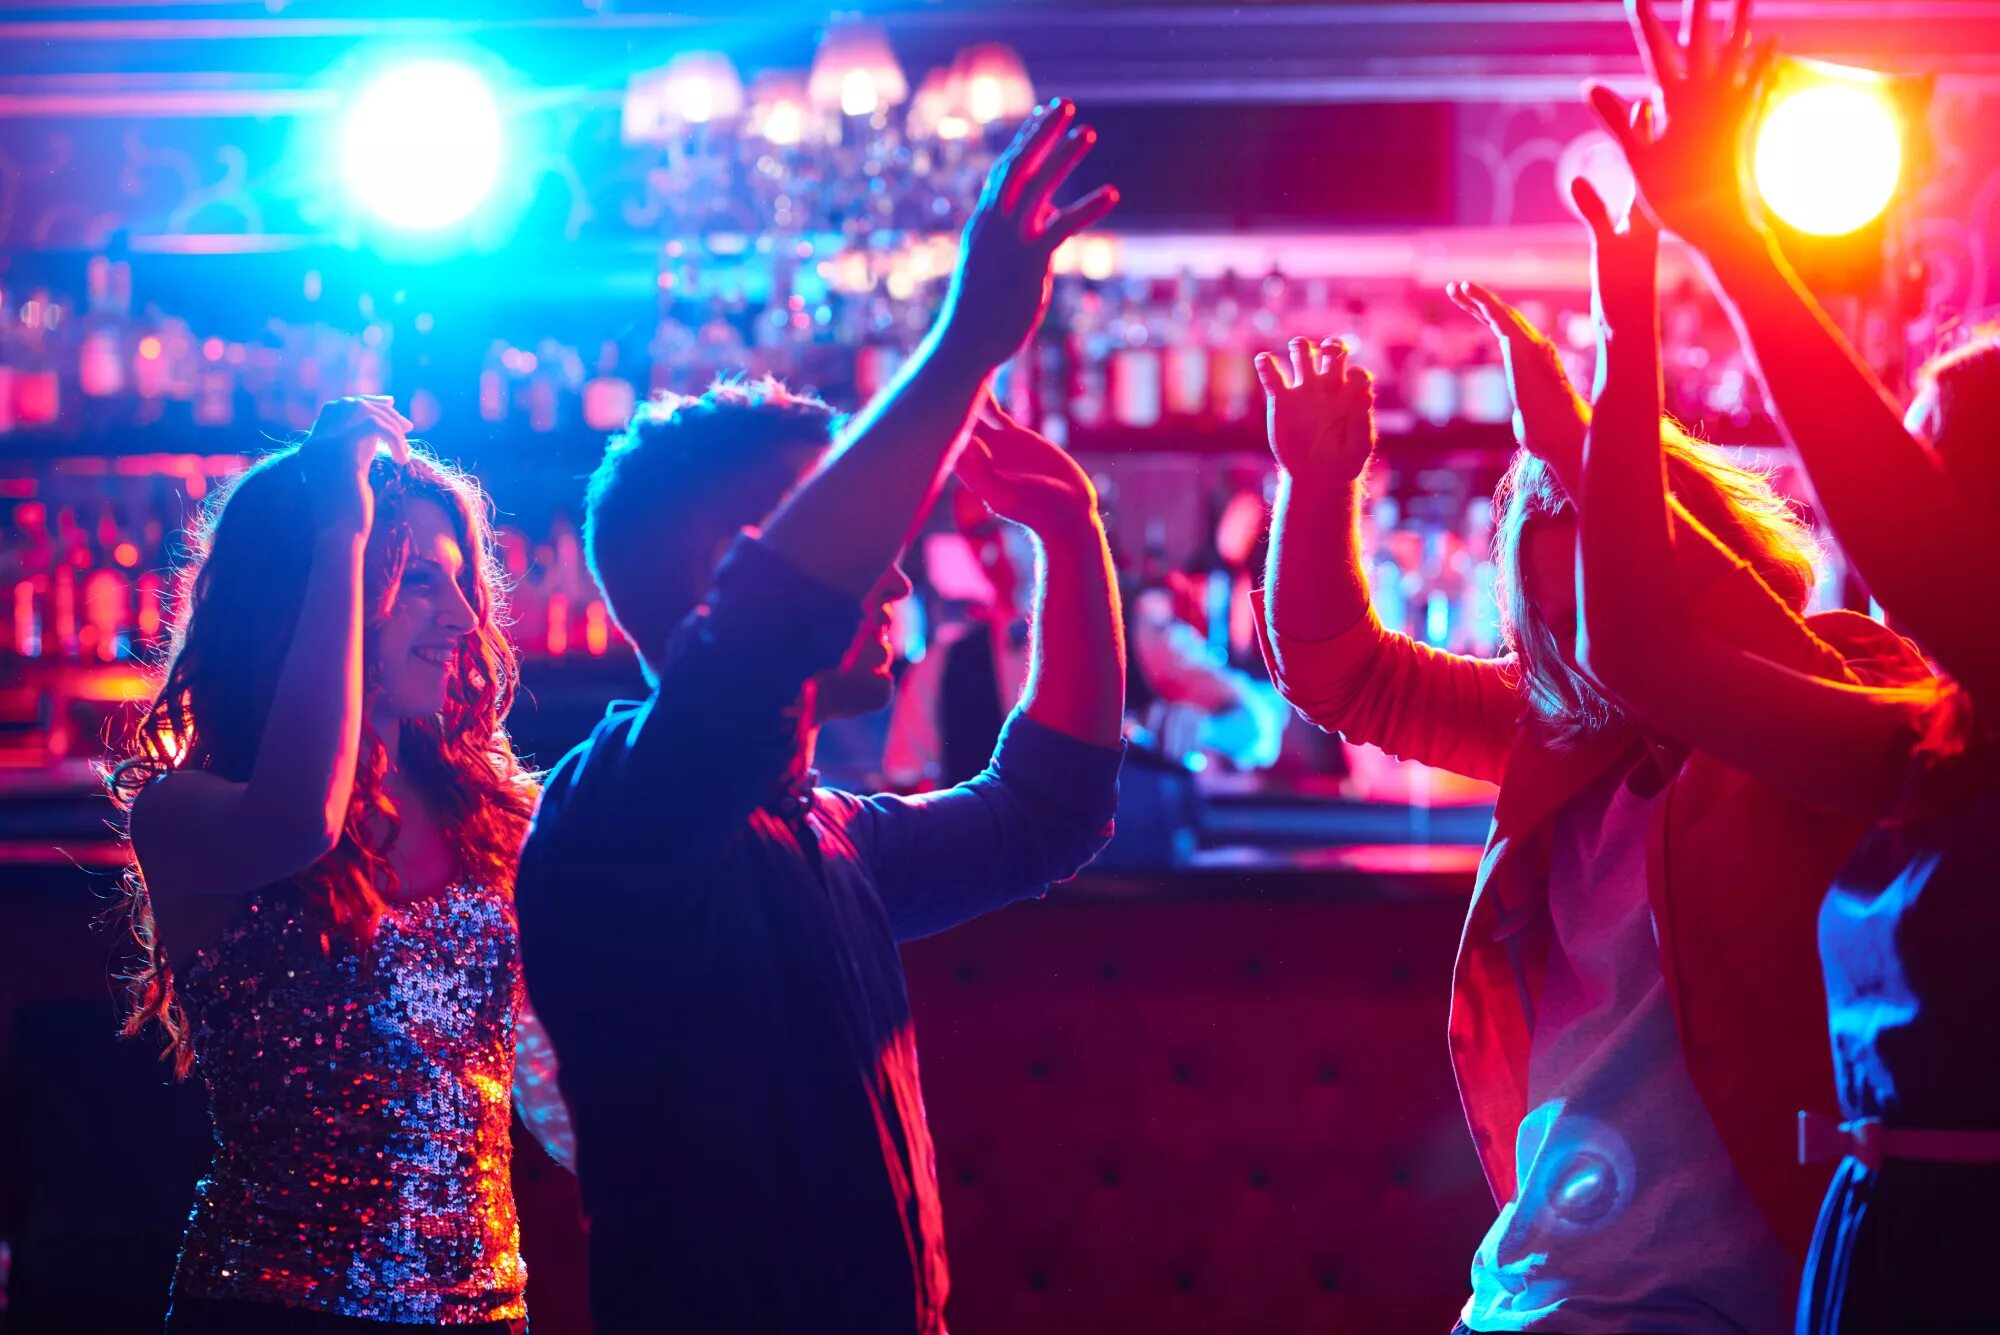 Вечеринка в клубе. Клубные танцы. Девушка танцует в баре. Танцы в клубе. Ночной клуб лица